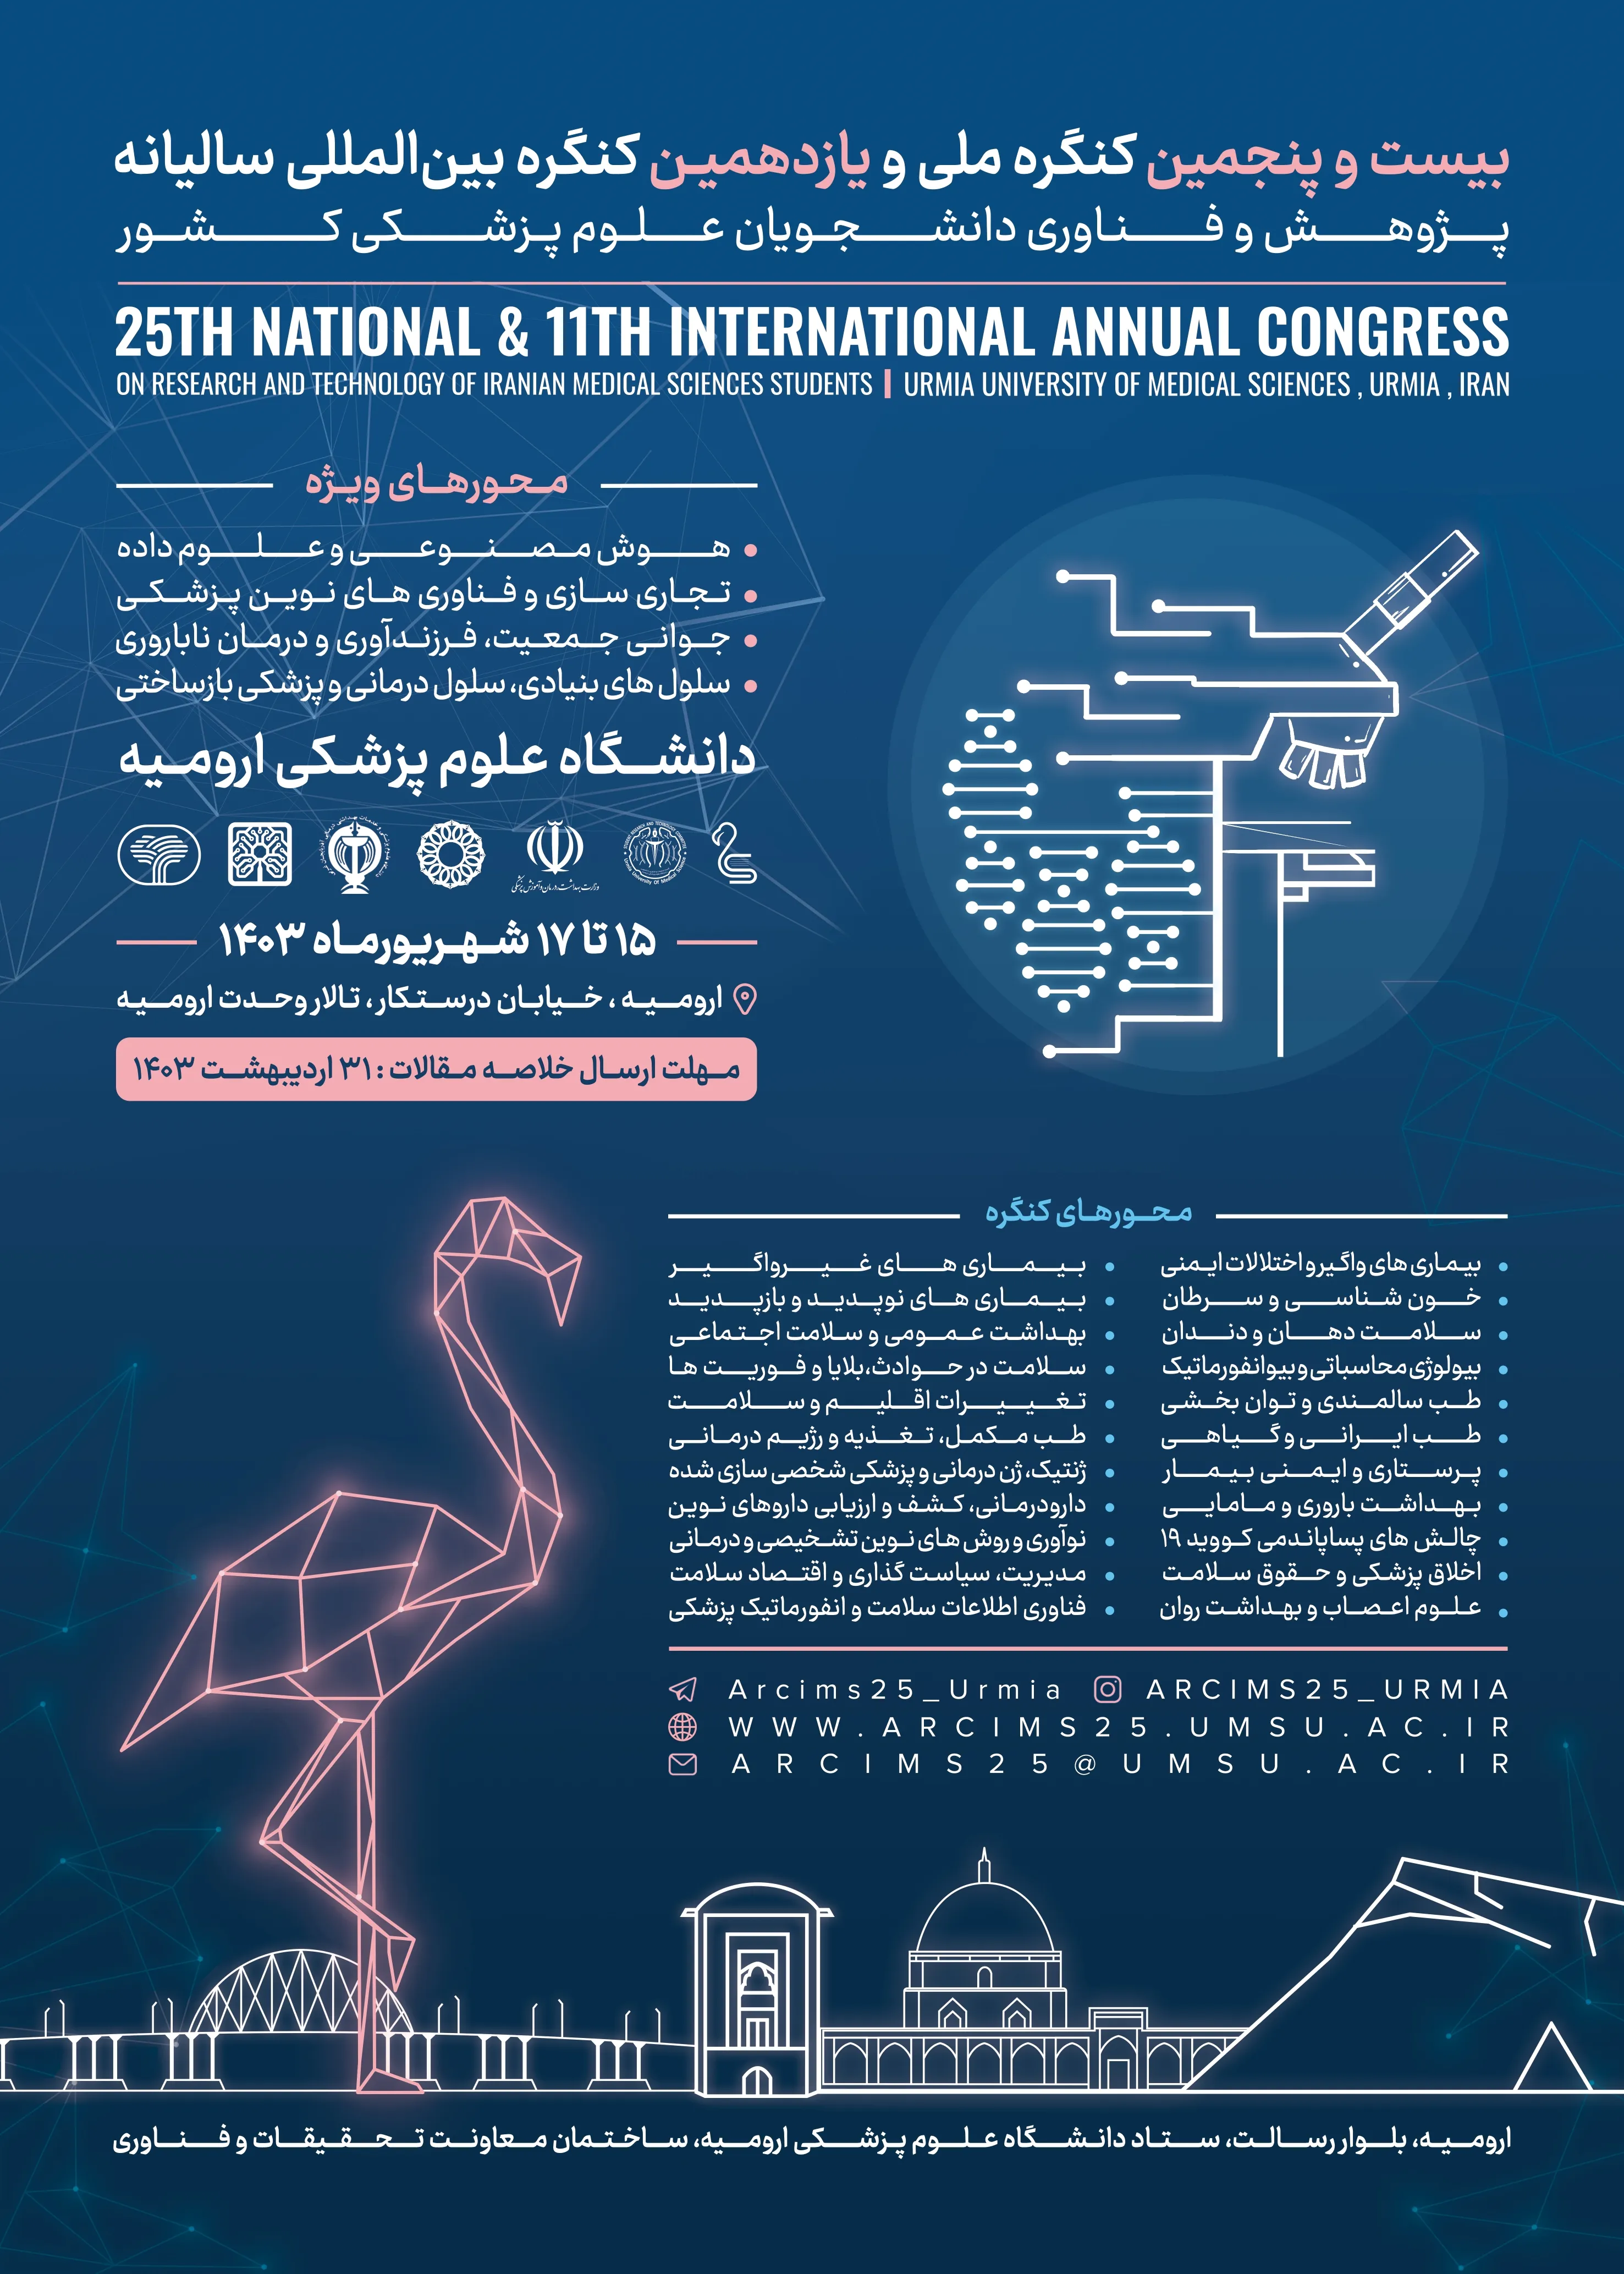 بیست و پنجمین کنگره ی ملی و یازدهمین کنگره ی بین المللی دانشجویان علوم پزشکی کشور